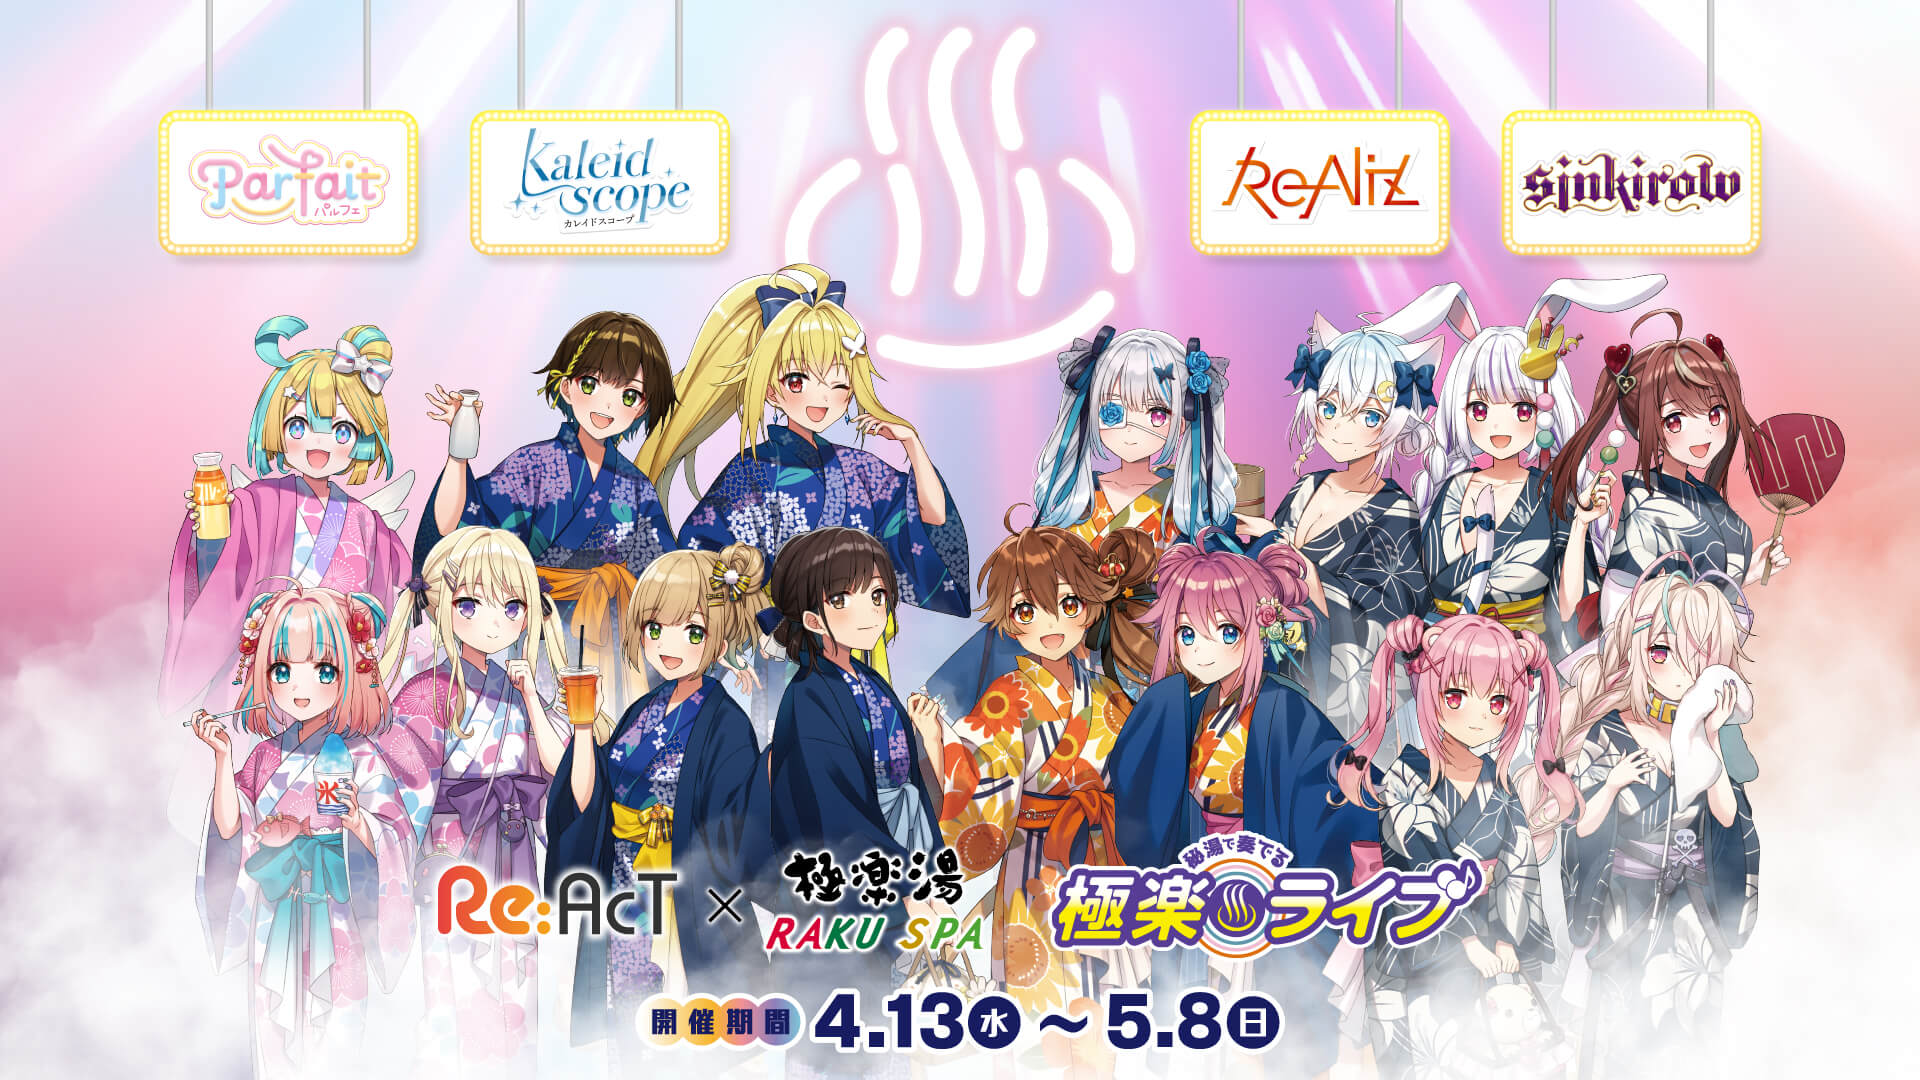 Re:AcT (リアクト) × 極楽湯・RAKU SUPA 4月13日よりコラボ開催!